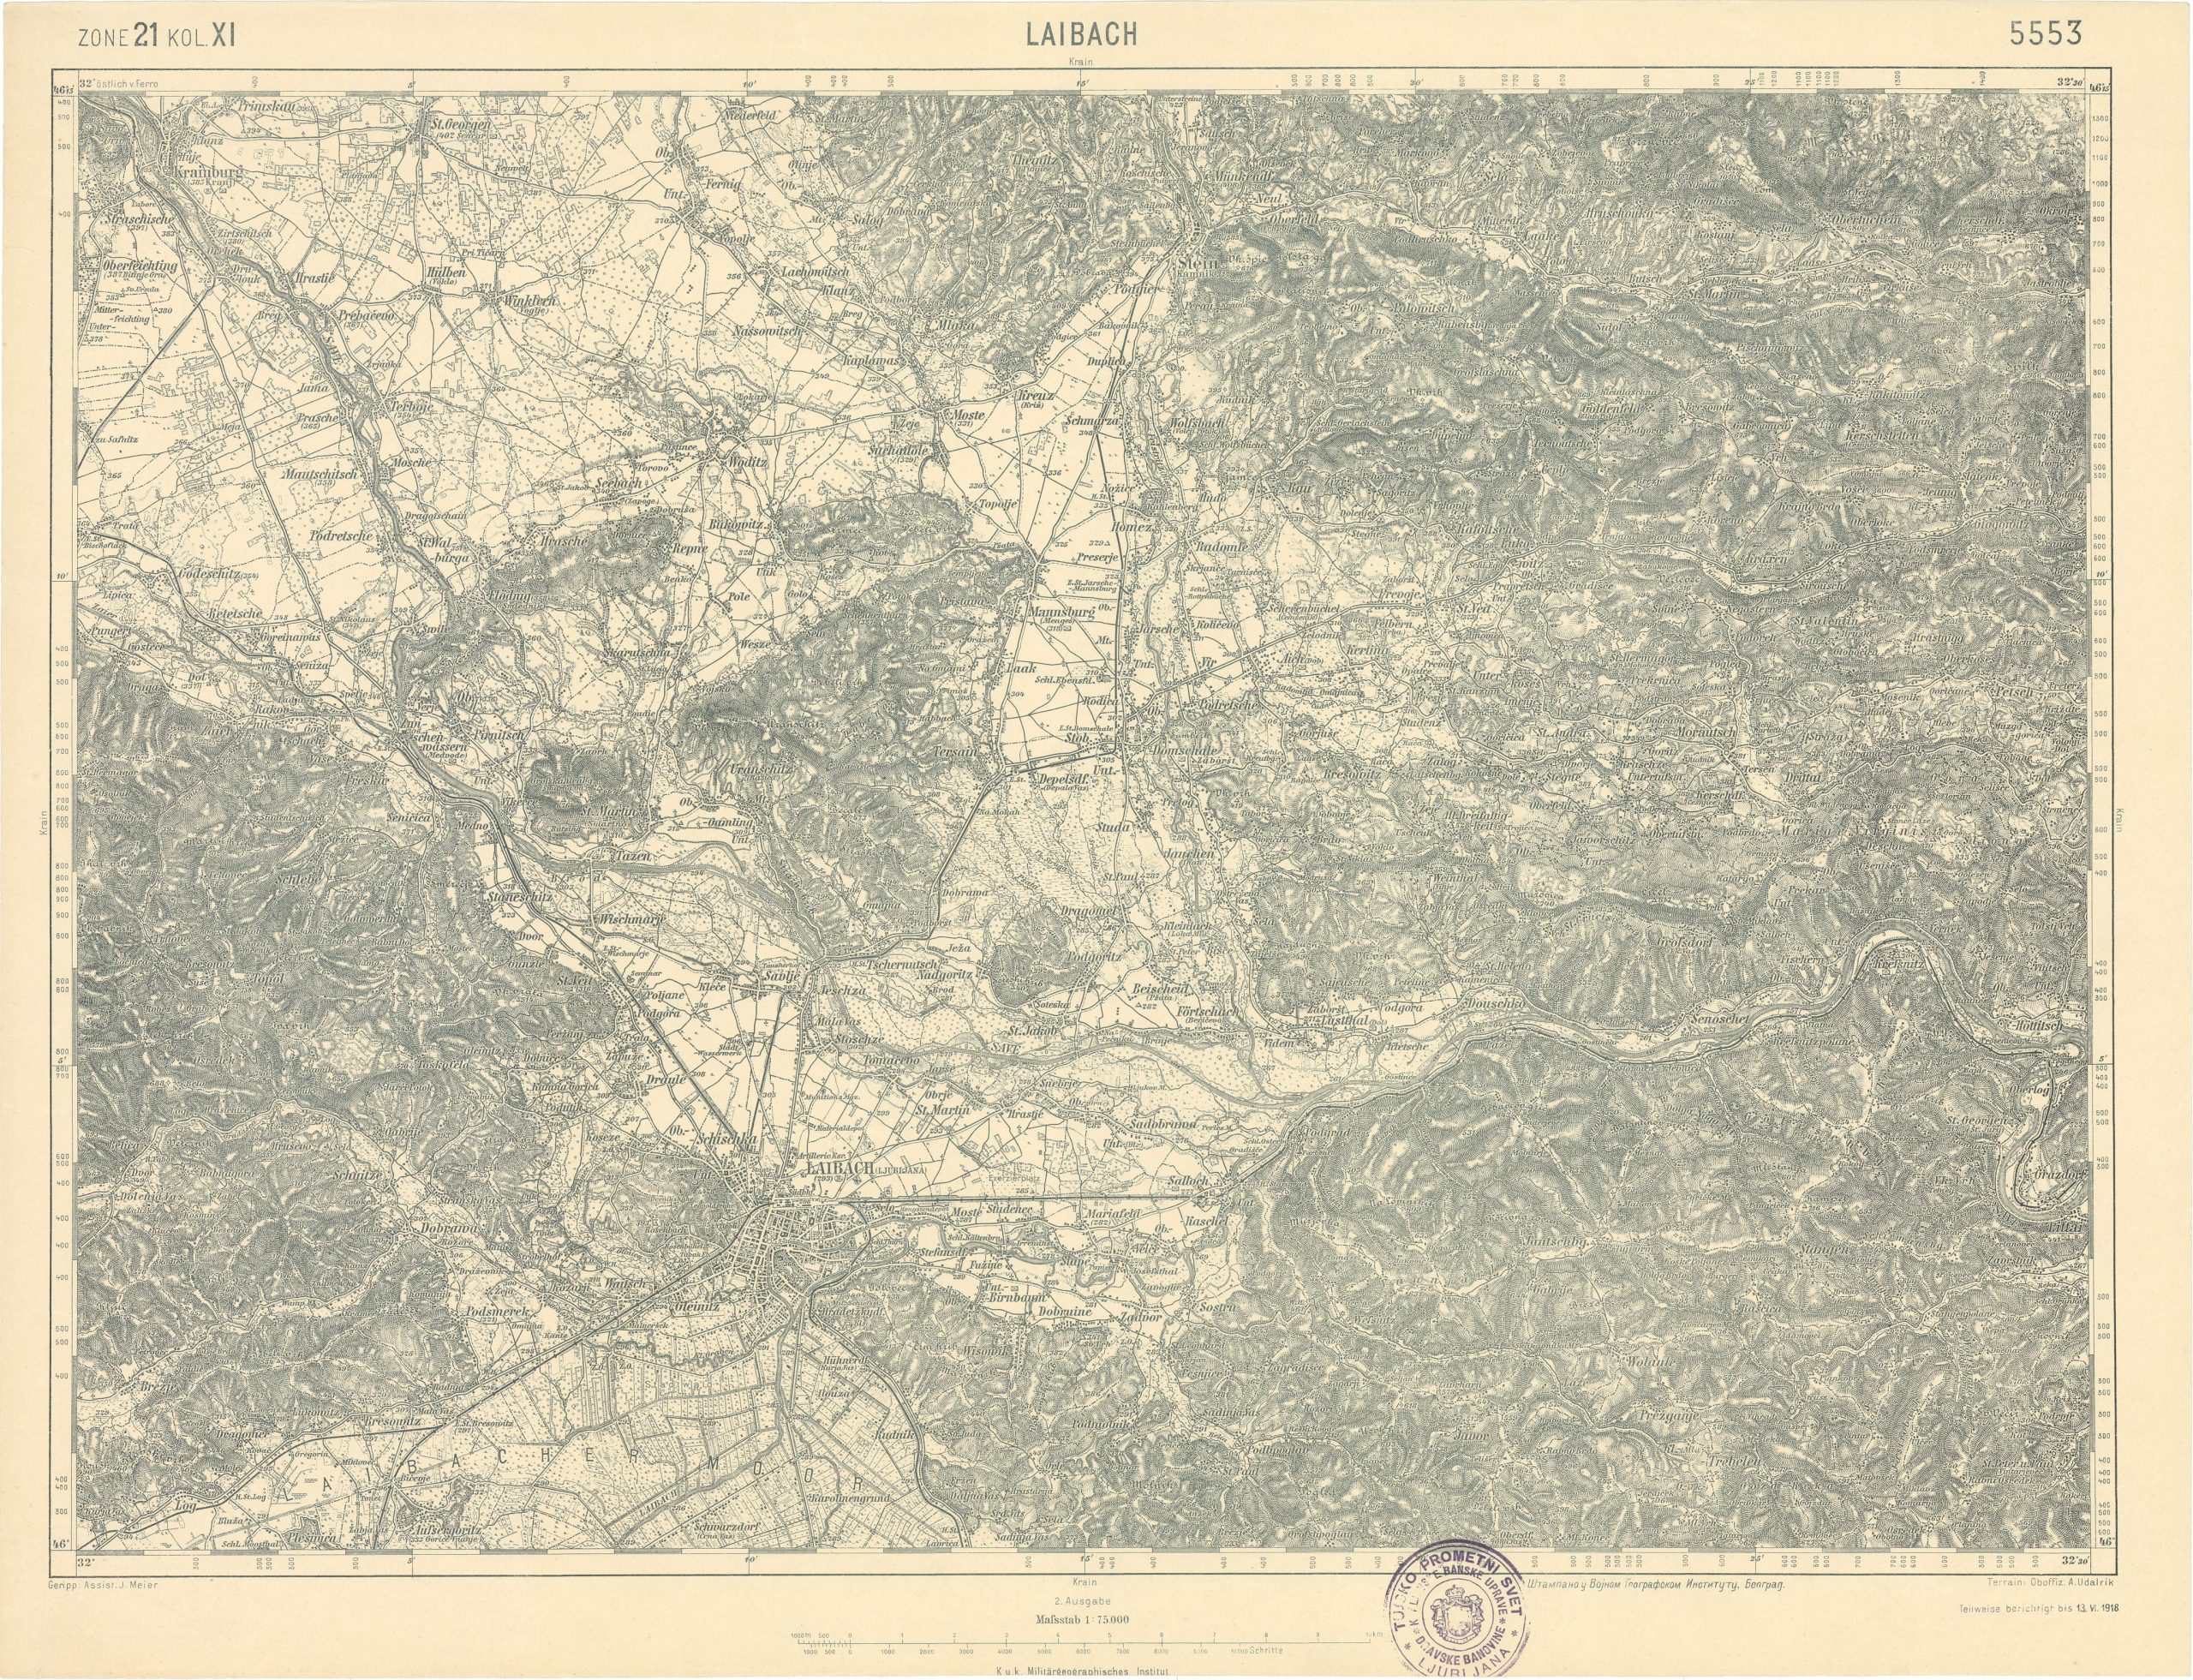 Zemljevid Ljubljane 1912